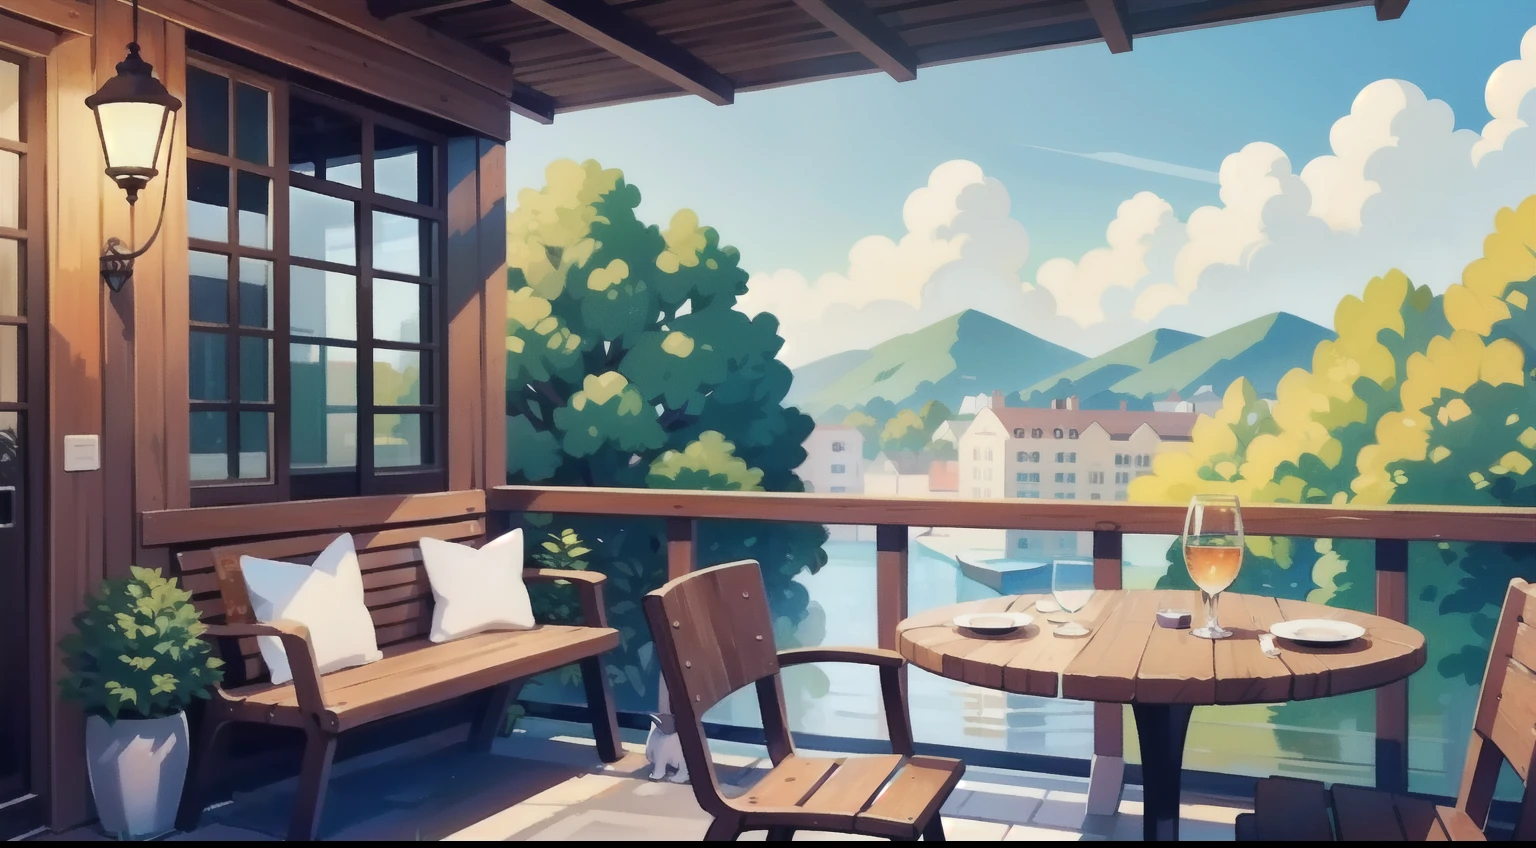 Belle peinture de paysage、Coin terrasse de café、ciel bleu、ultra-qualité、dessus de la table、couleur naturelle、Chien brun sur une chaise、Chien noir